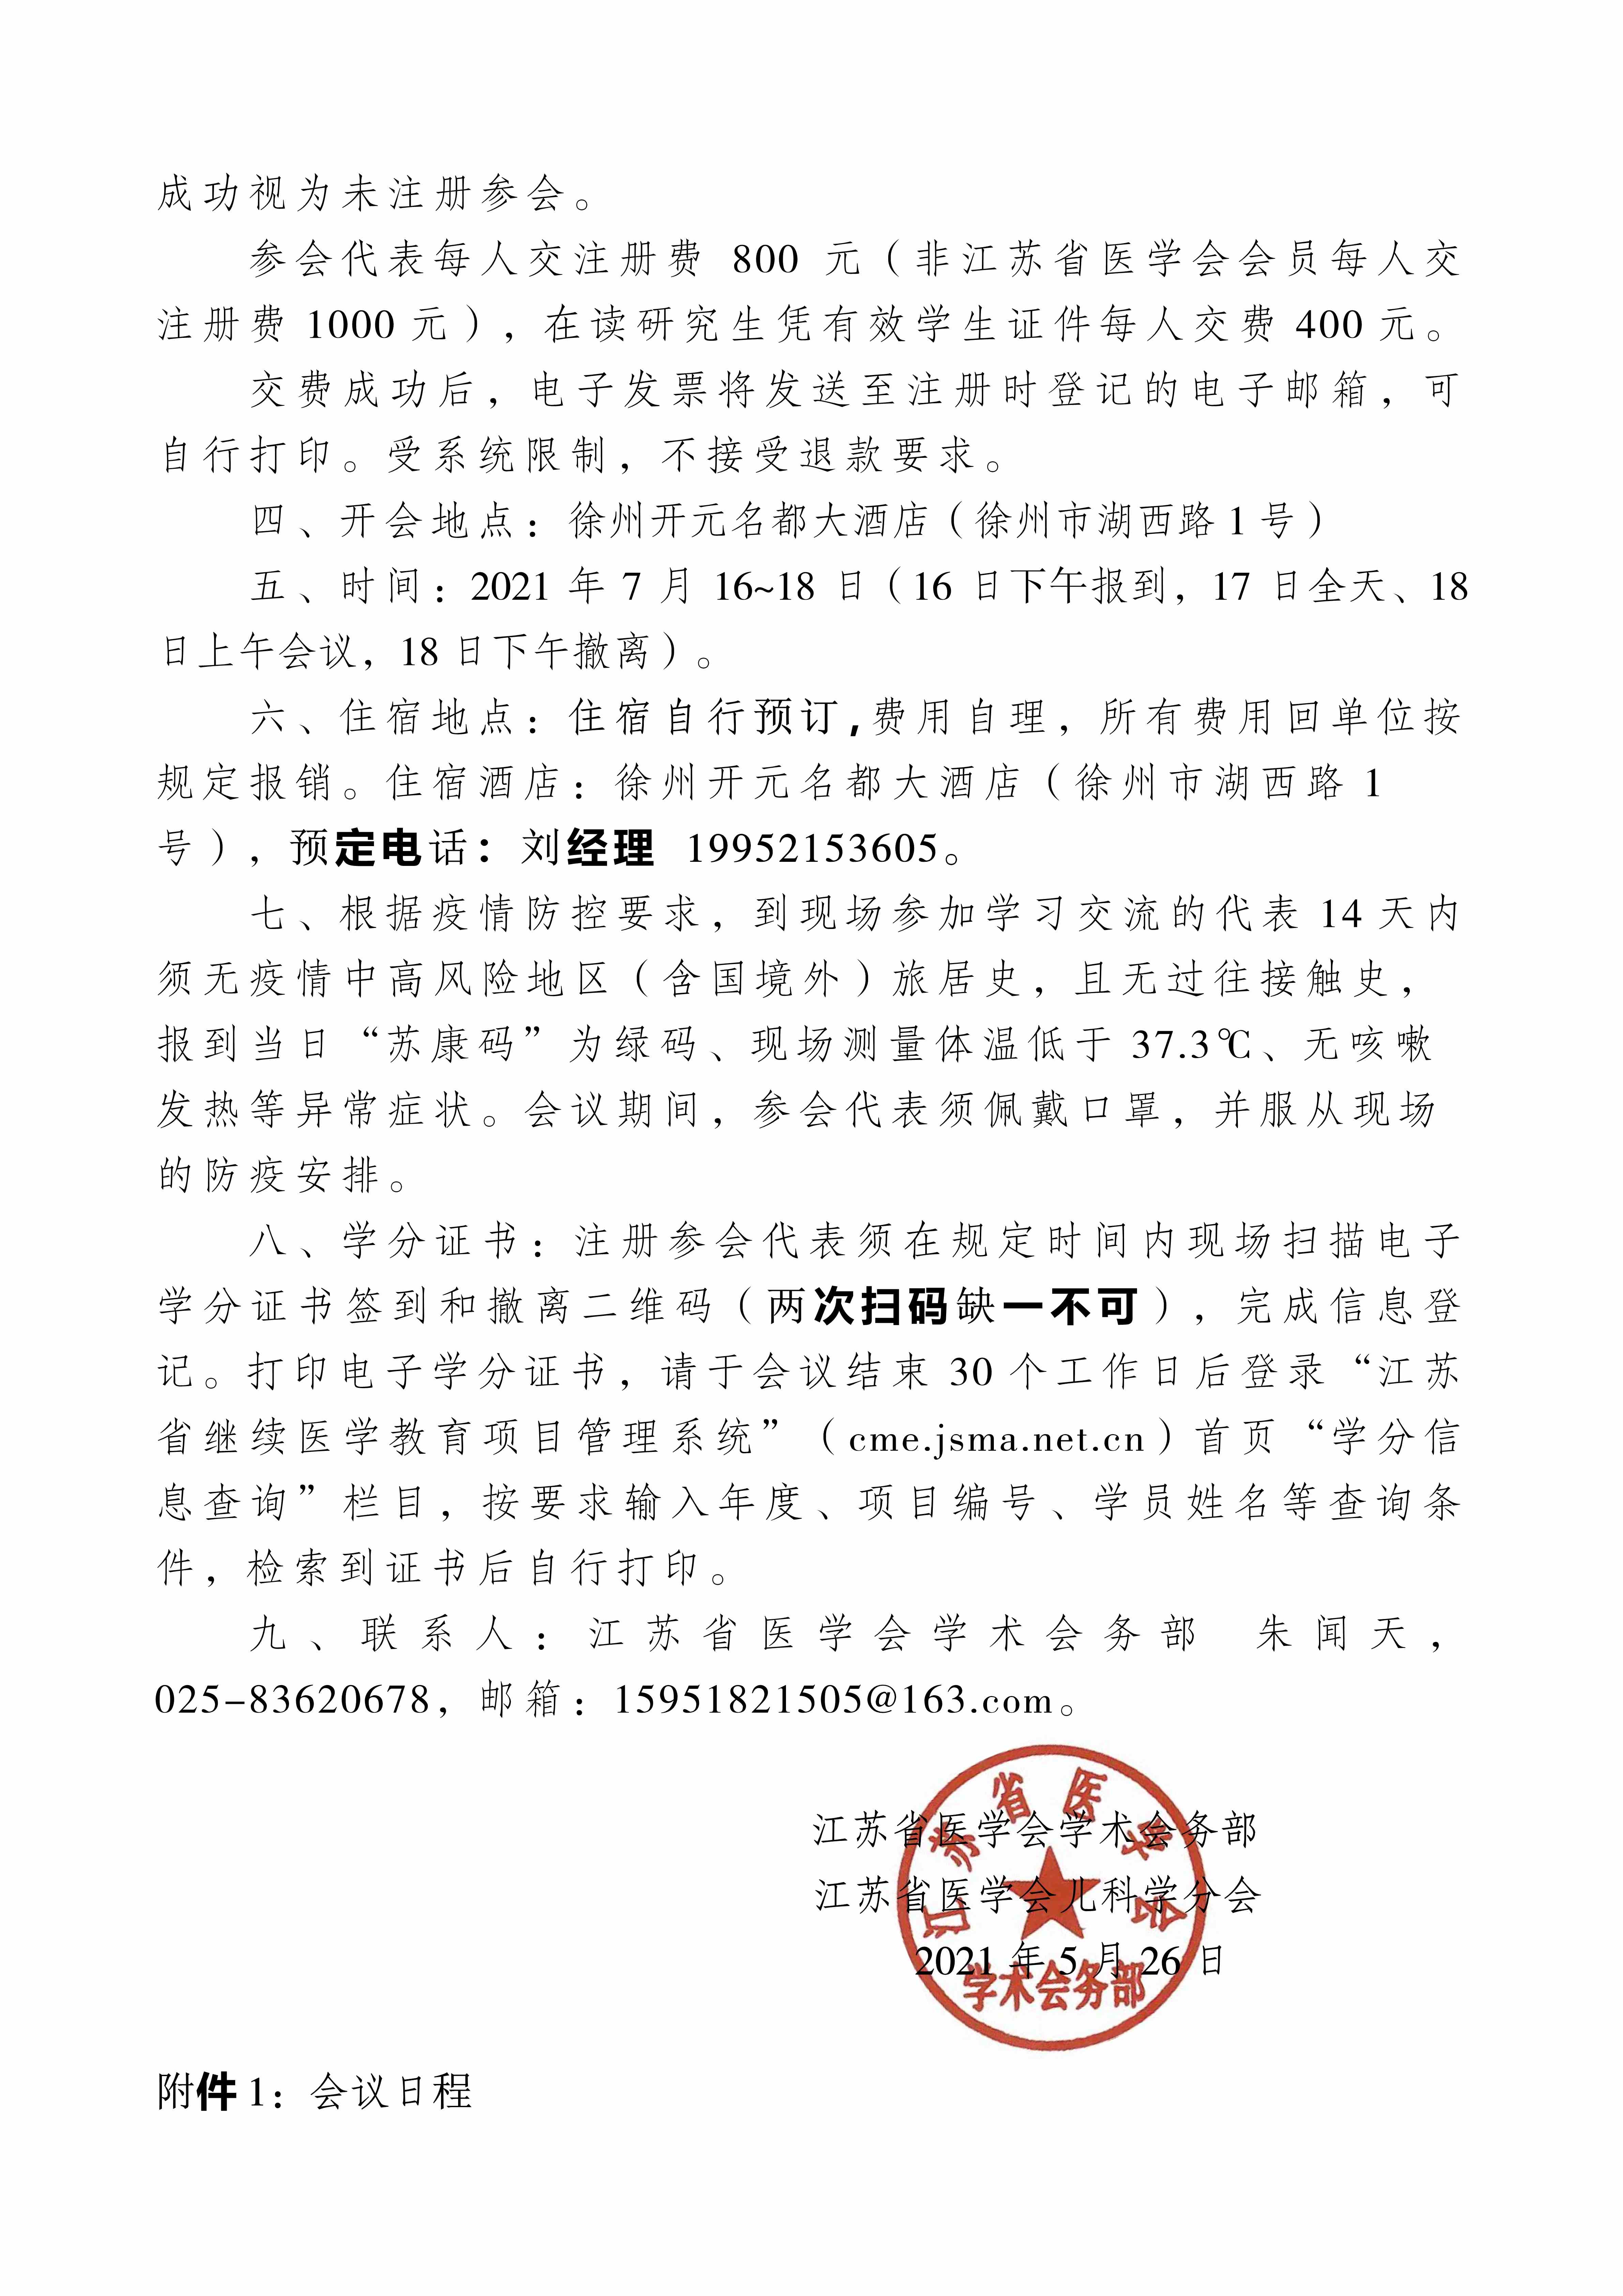 20210701江苏省第三届儿保发育行为年会正式通知(1)_2_pro.jpg